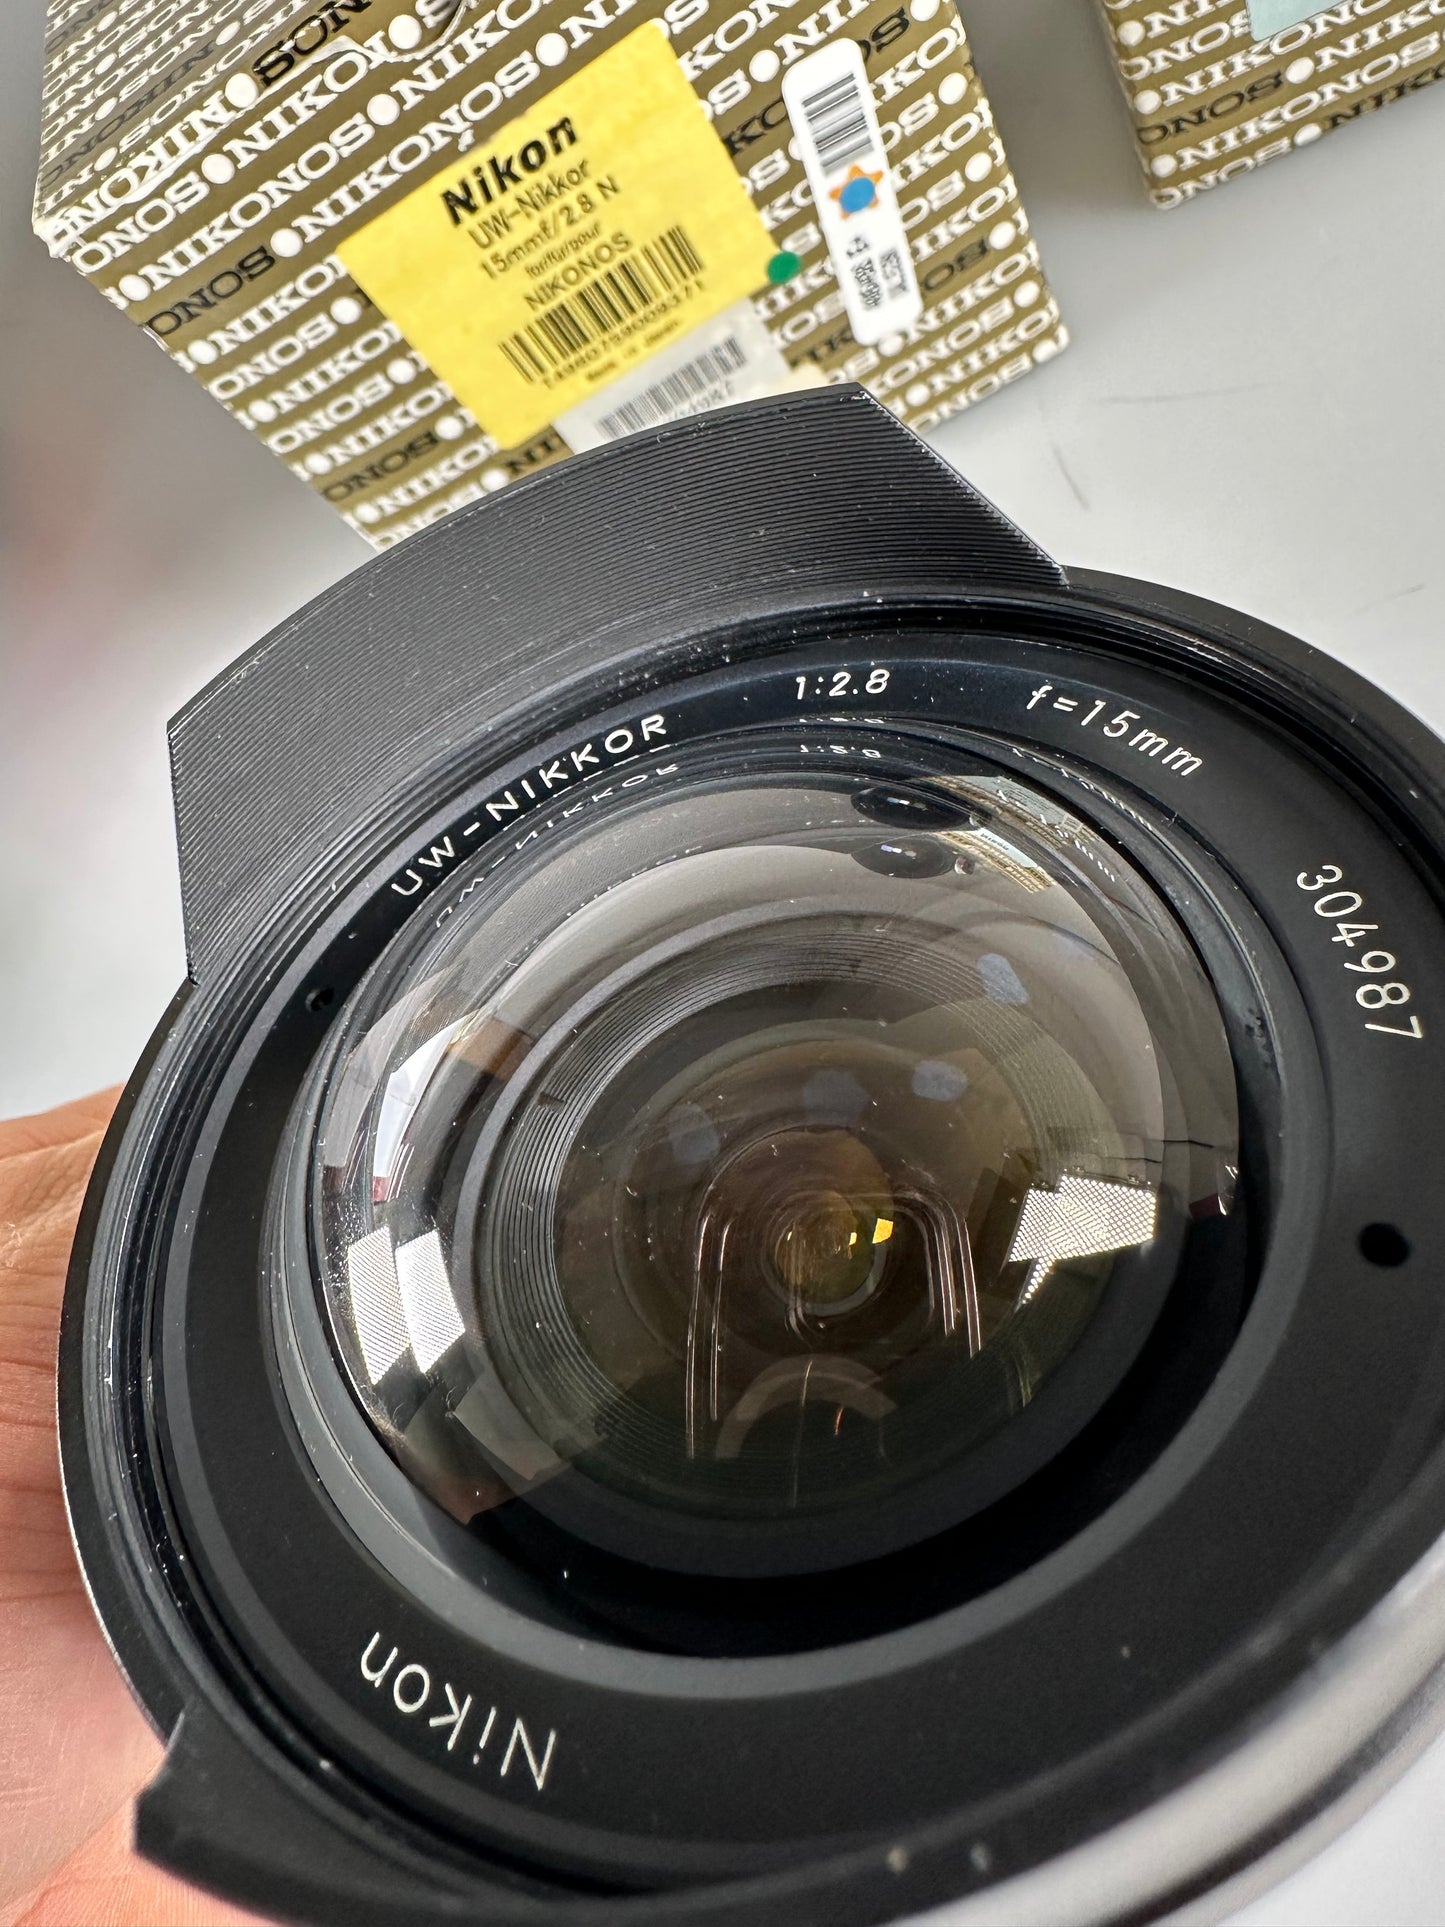 Nikon UW-Nikkor 15mm F2.8 N Lens For Nikonos Series with Finder DF-11